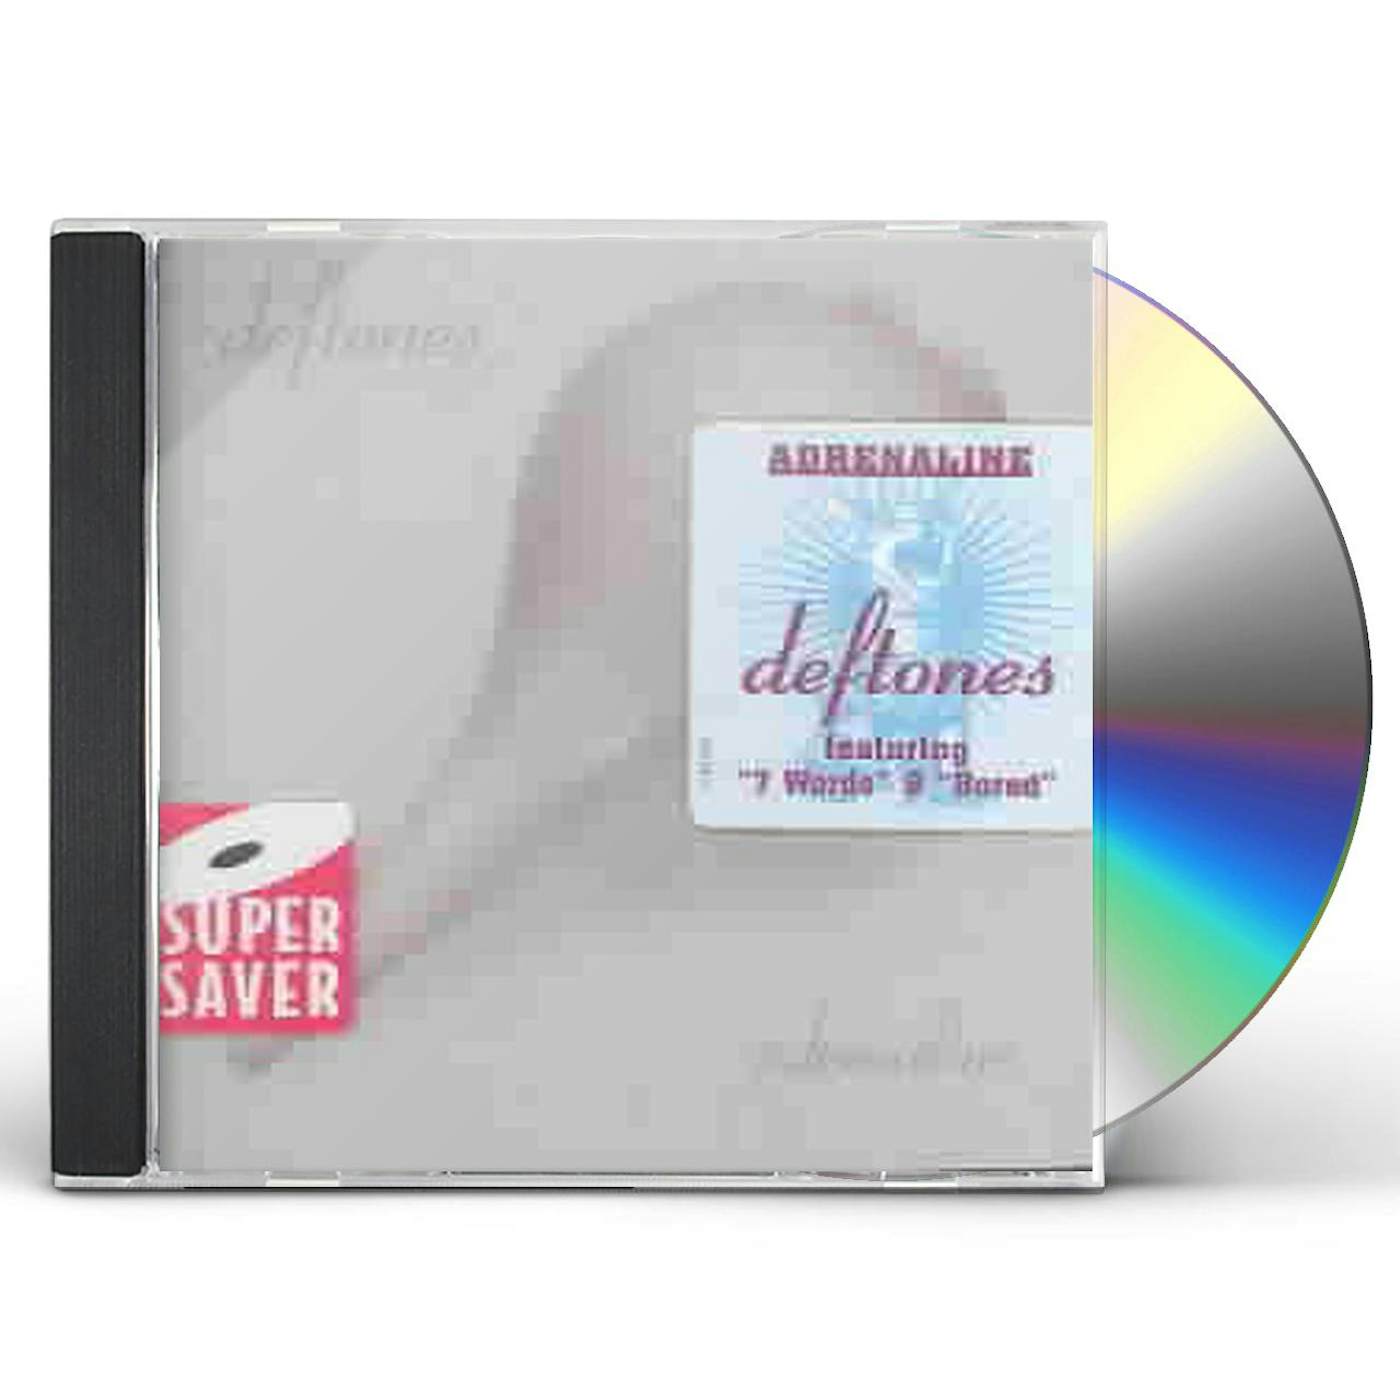 adrenaline cd - Deftones